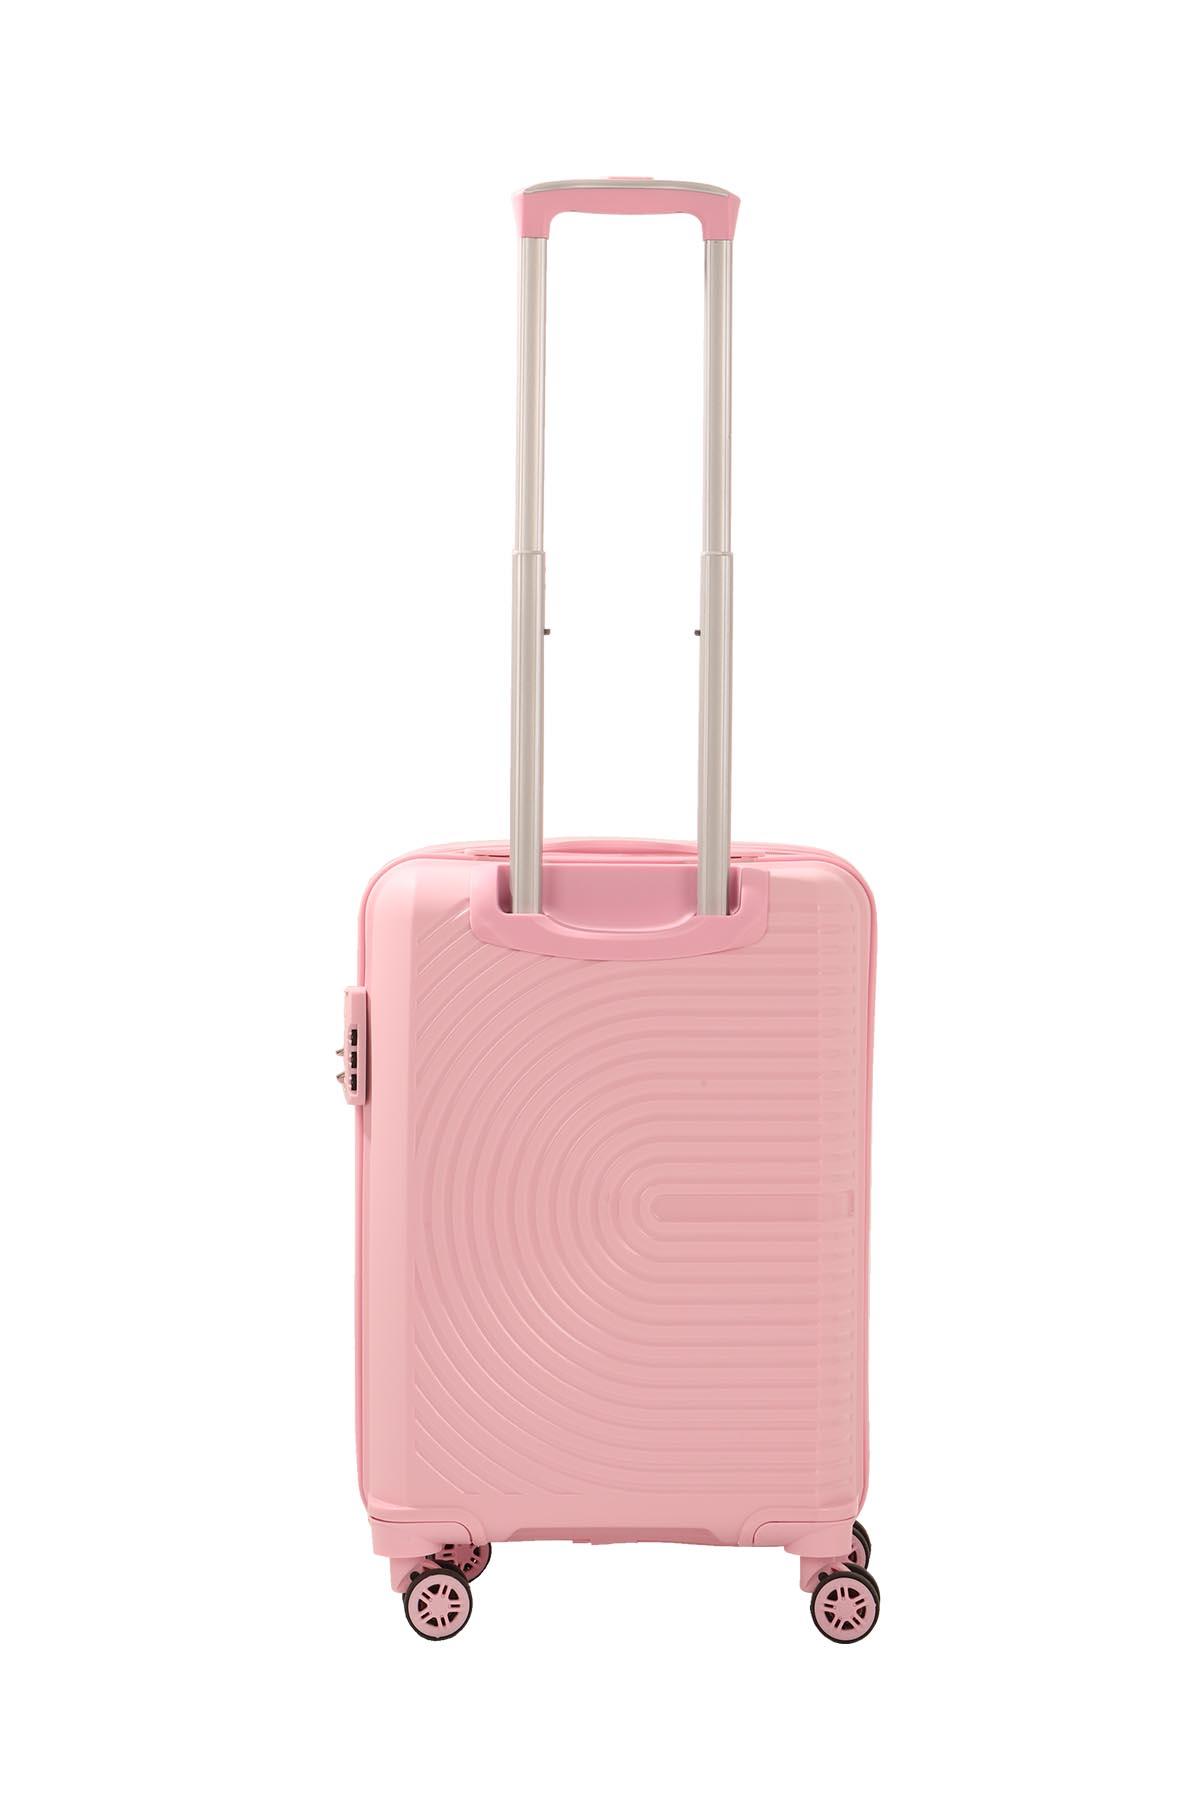 Slike MCS Kofer V374 roze S 55cm